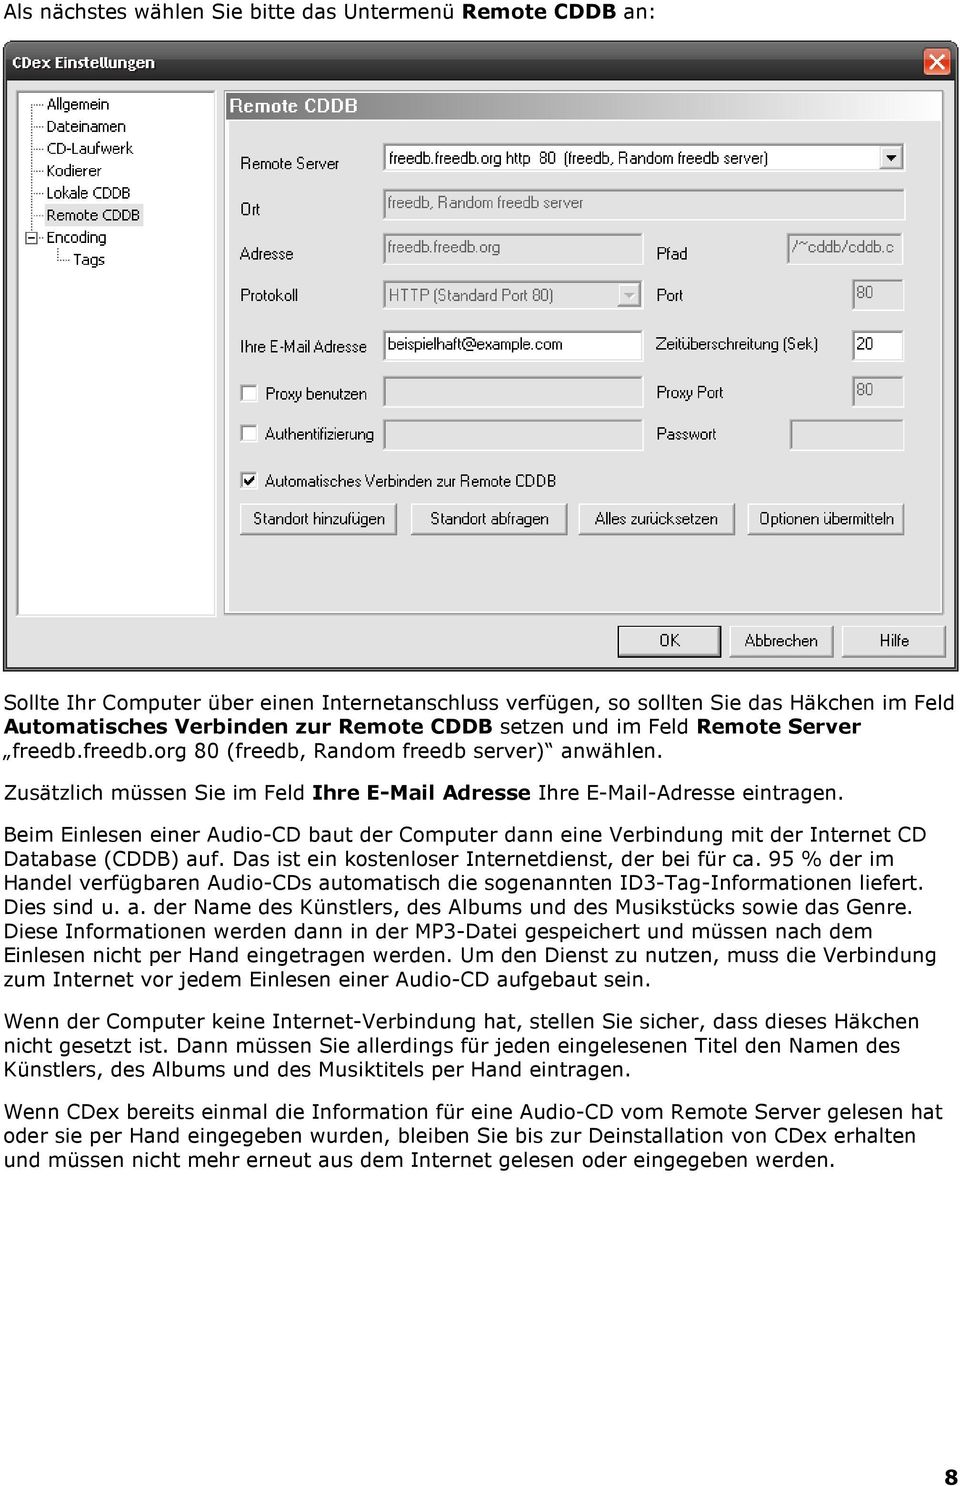 Beim Einlesen einer Audio-CD baut der Computer dann eine Verbindung mit der Internet CD Database (CDDB) auf. Das ist ein kostenloser Internetdienst, der bei für ca.